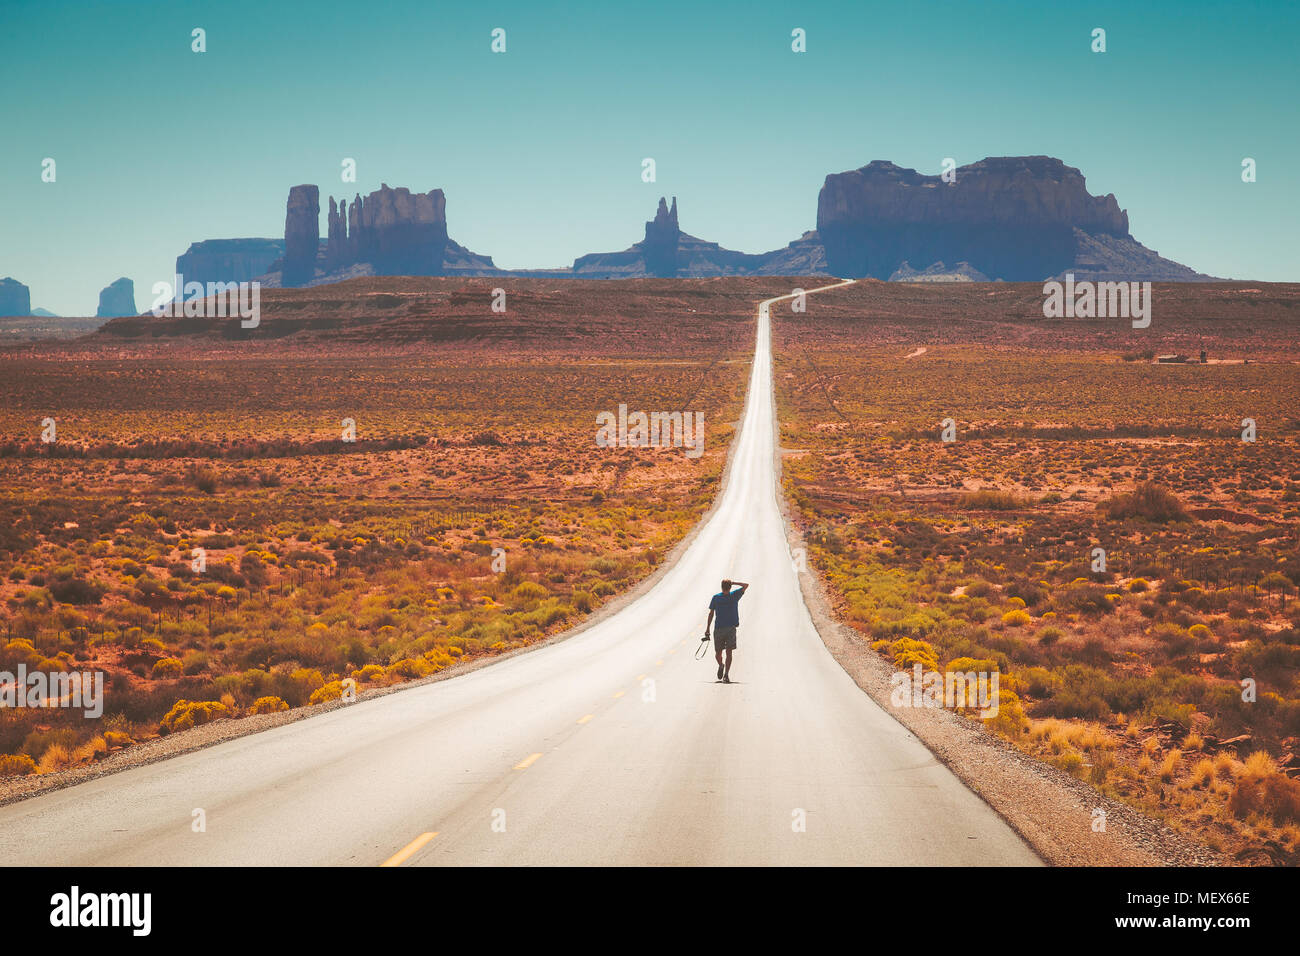 Classic vue panoramique de jeune homme marche sur célèbre Forrest Gump Road à Monument Valley à midi, de l'Utah, l'Ouest américain, USA Banque D'Images